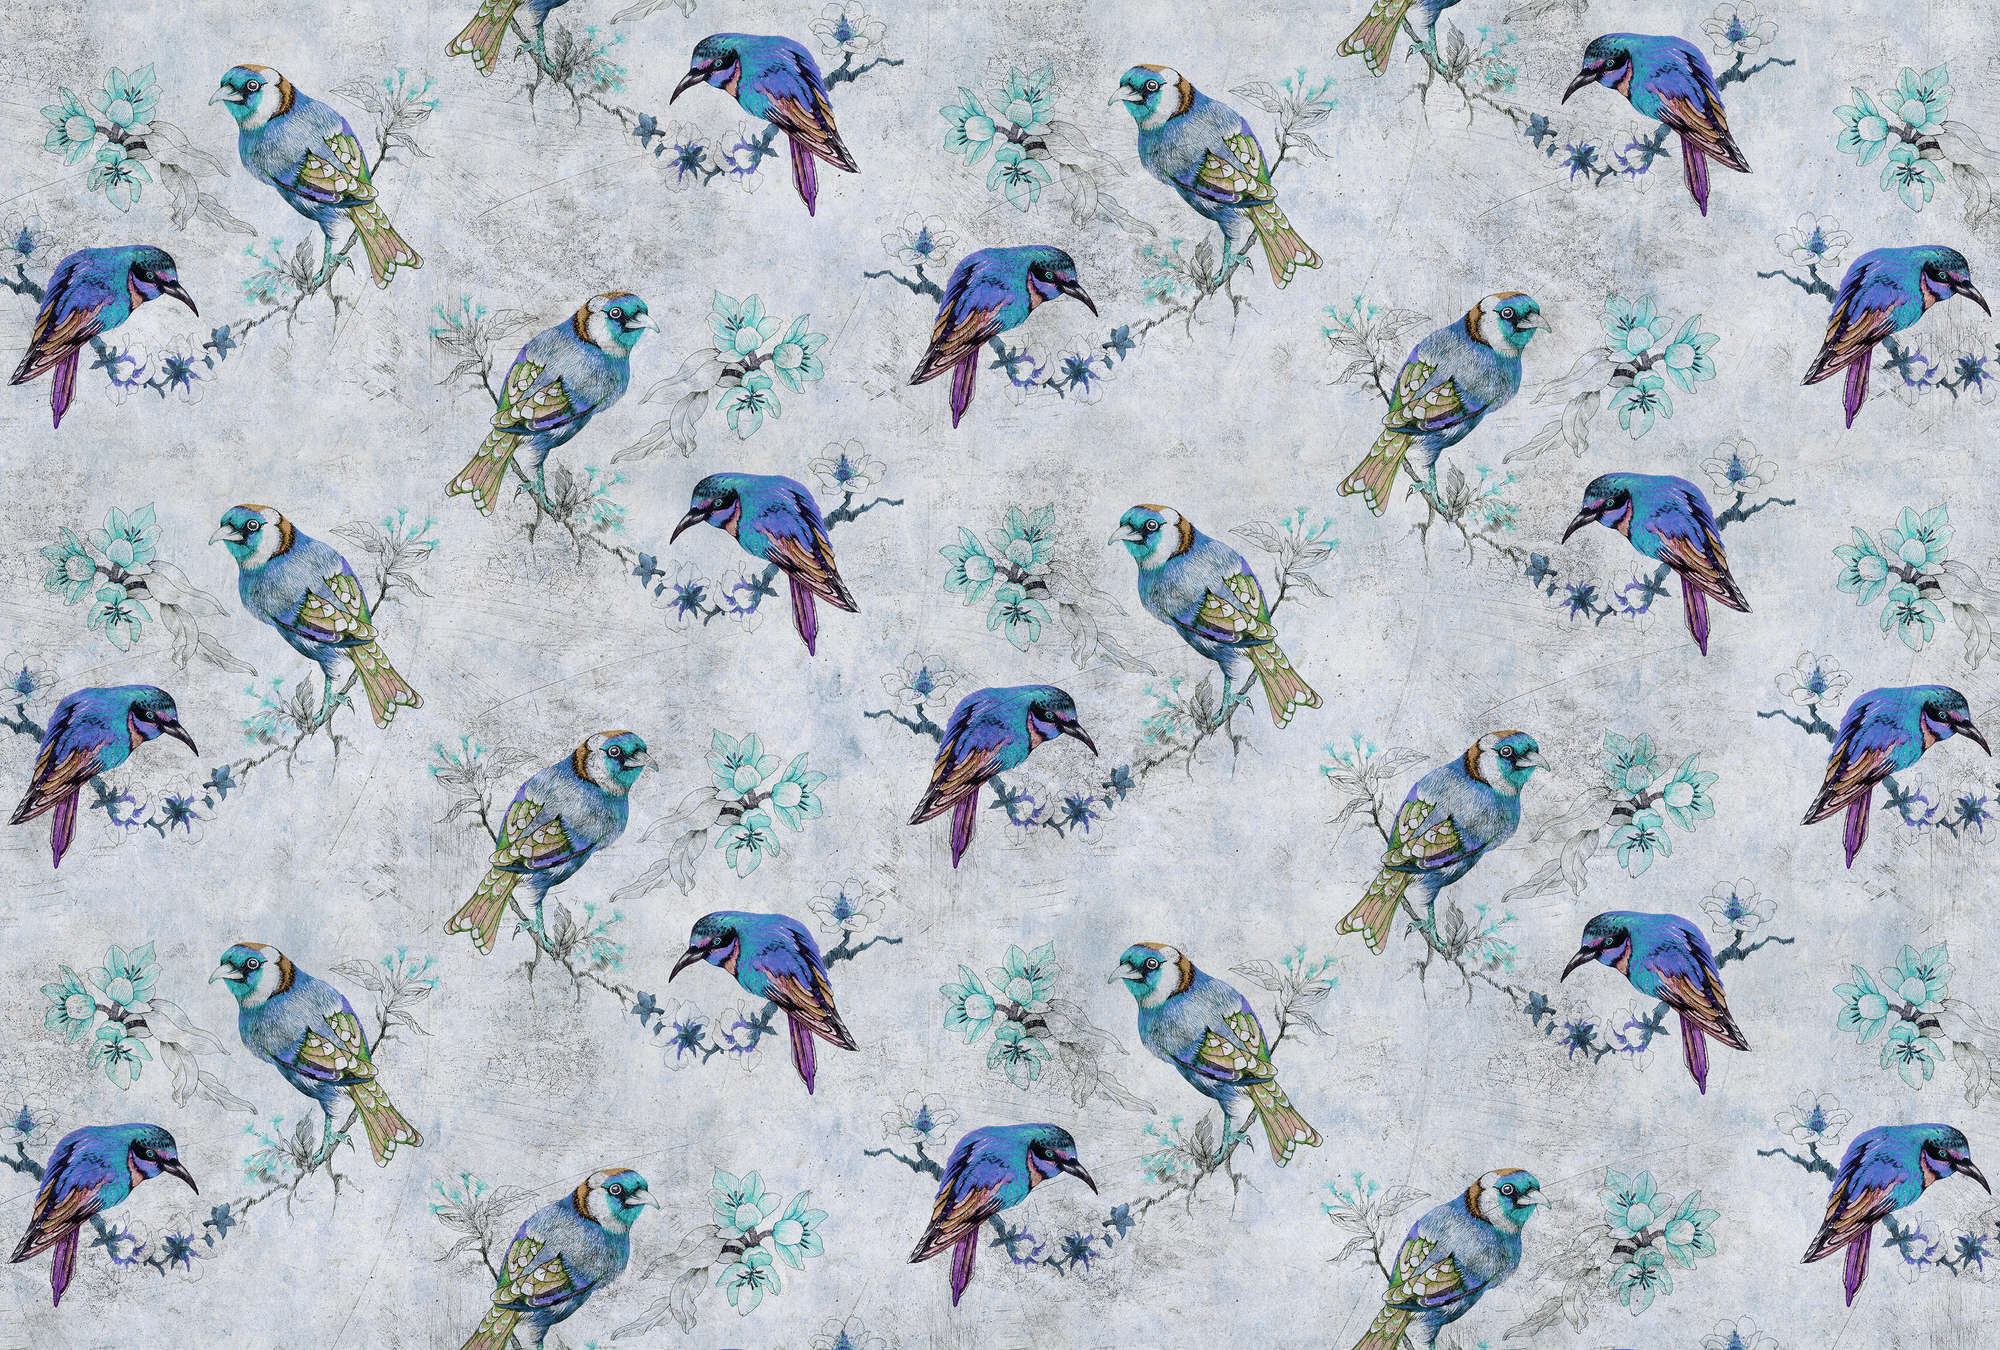             Love birds 1 - Papier peint motif oiseaux style dessin en texture grattée - bleu, gris | texture intissé
        